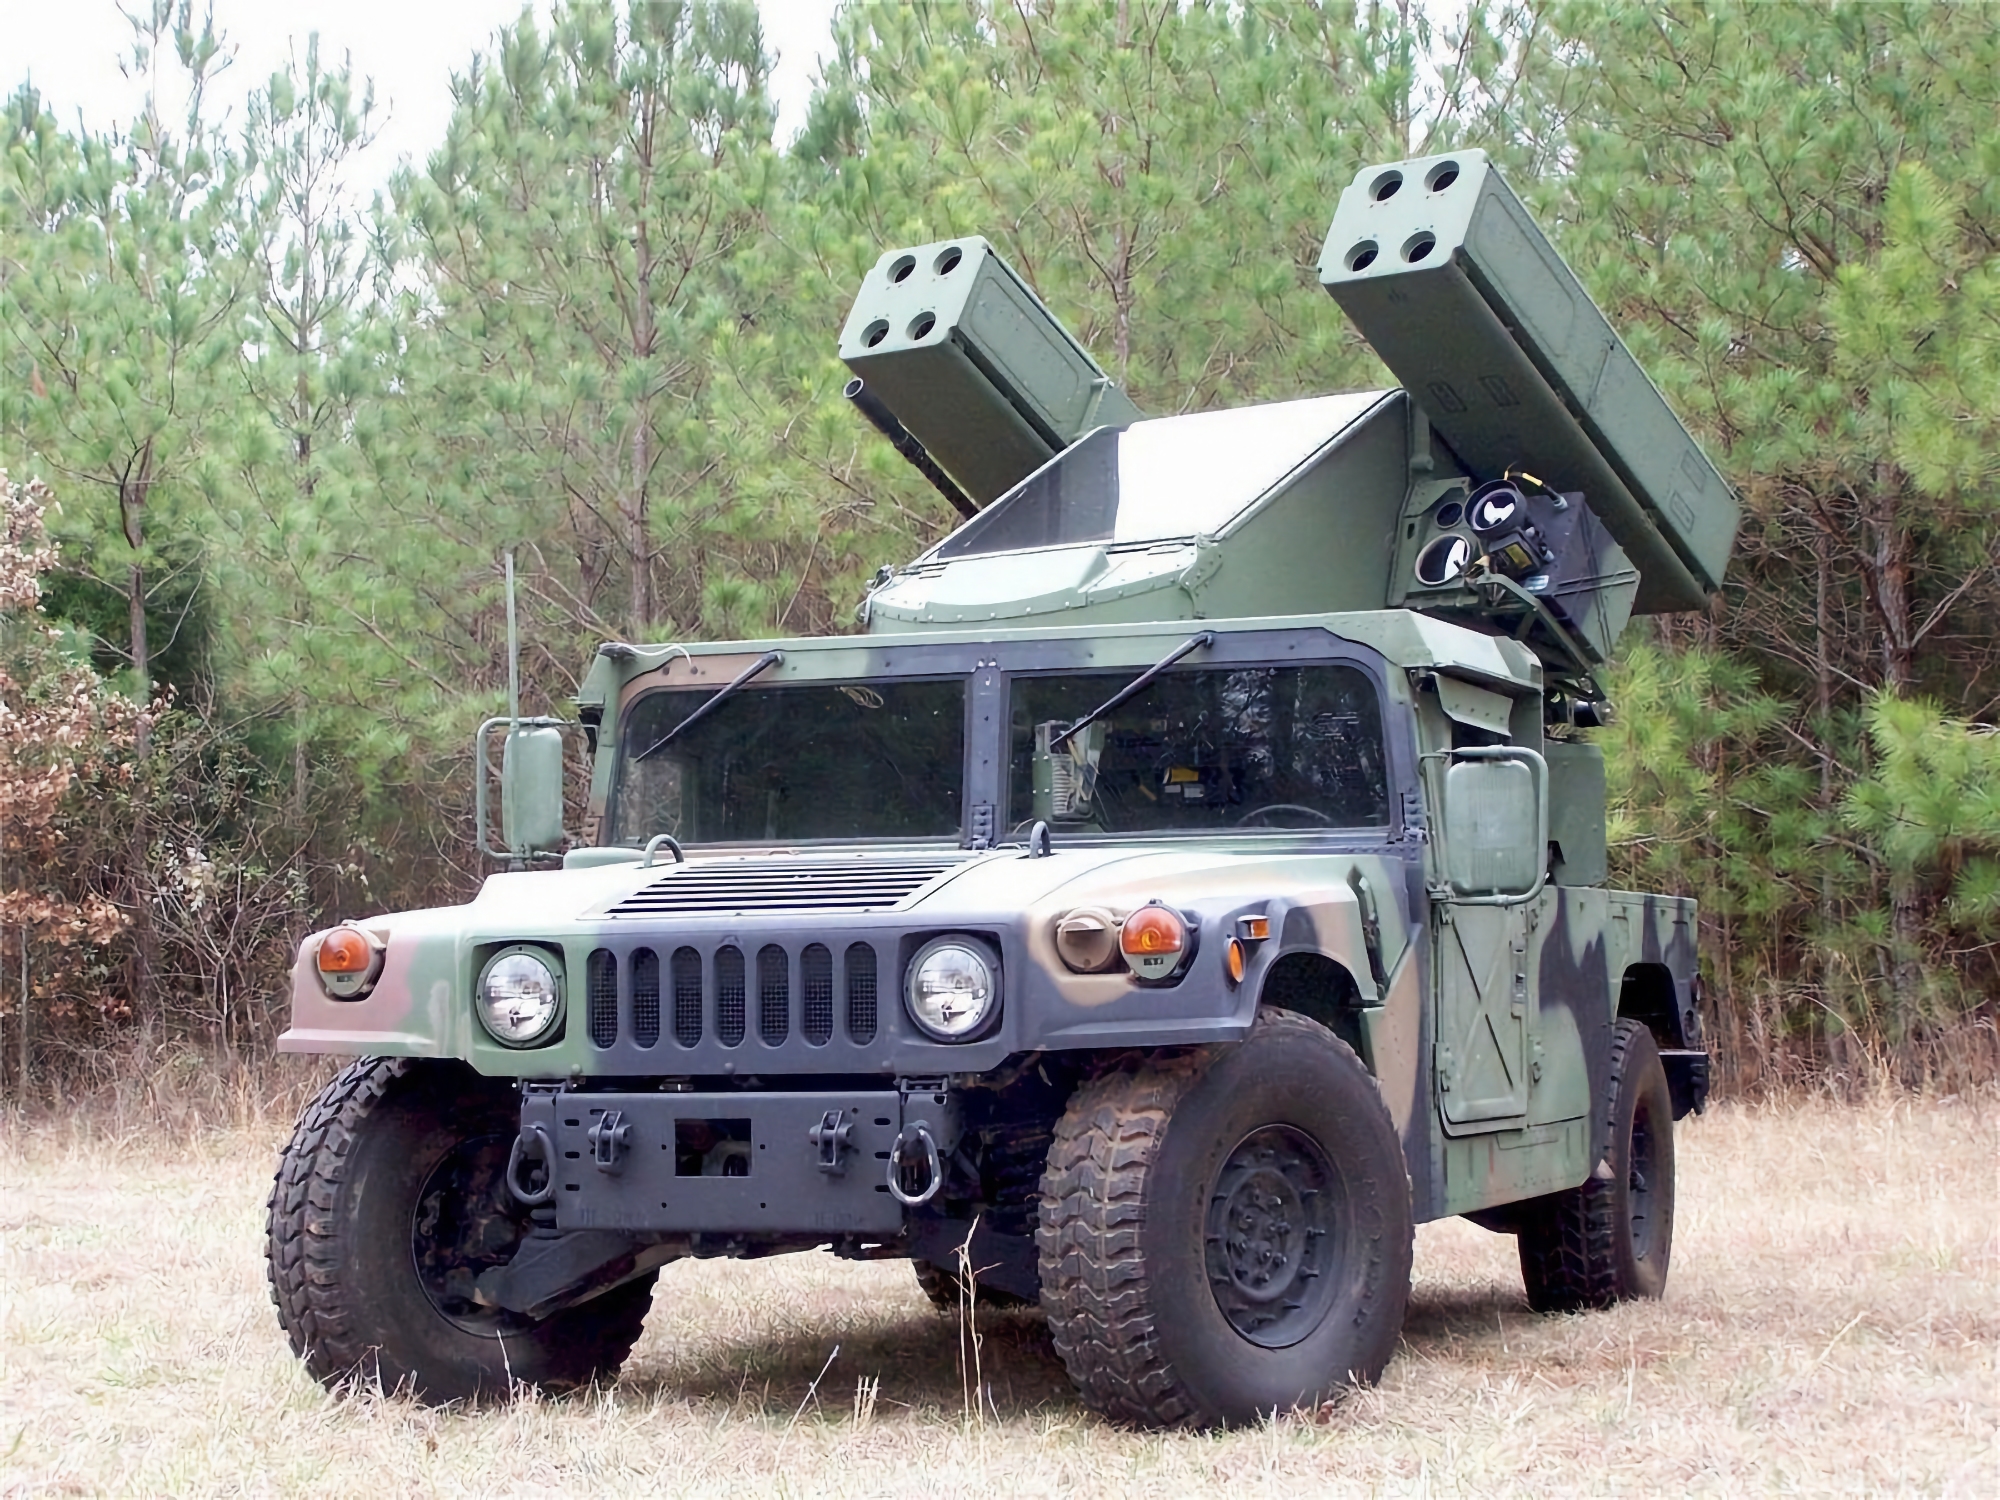 L'AFU riceve il SAM AN/TWQ-1 Avenger con missili Stinger, in grado di distruggere obiettivi aerei fino a 5,5 km di distanza.